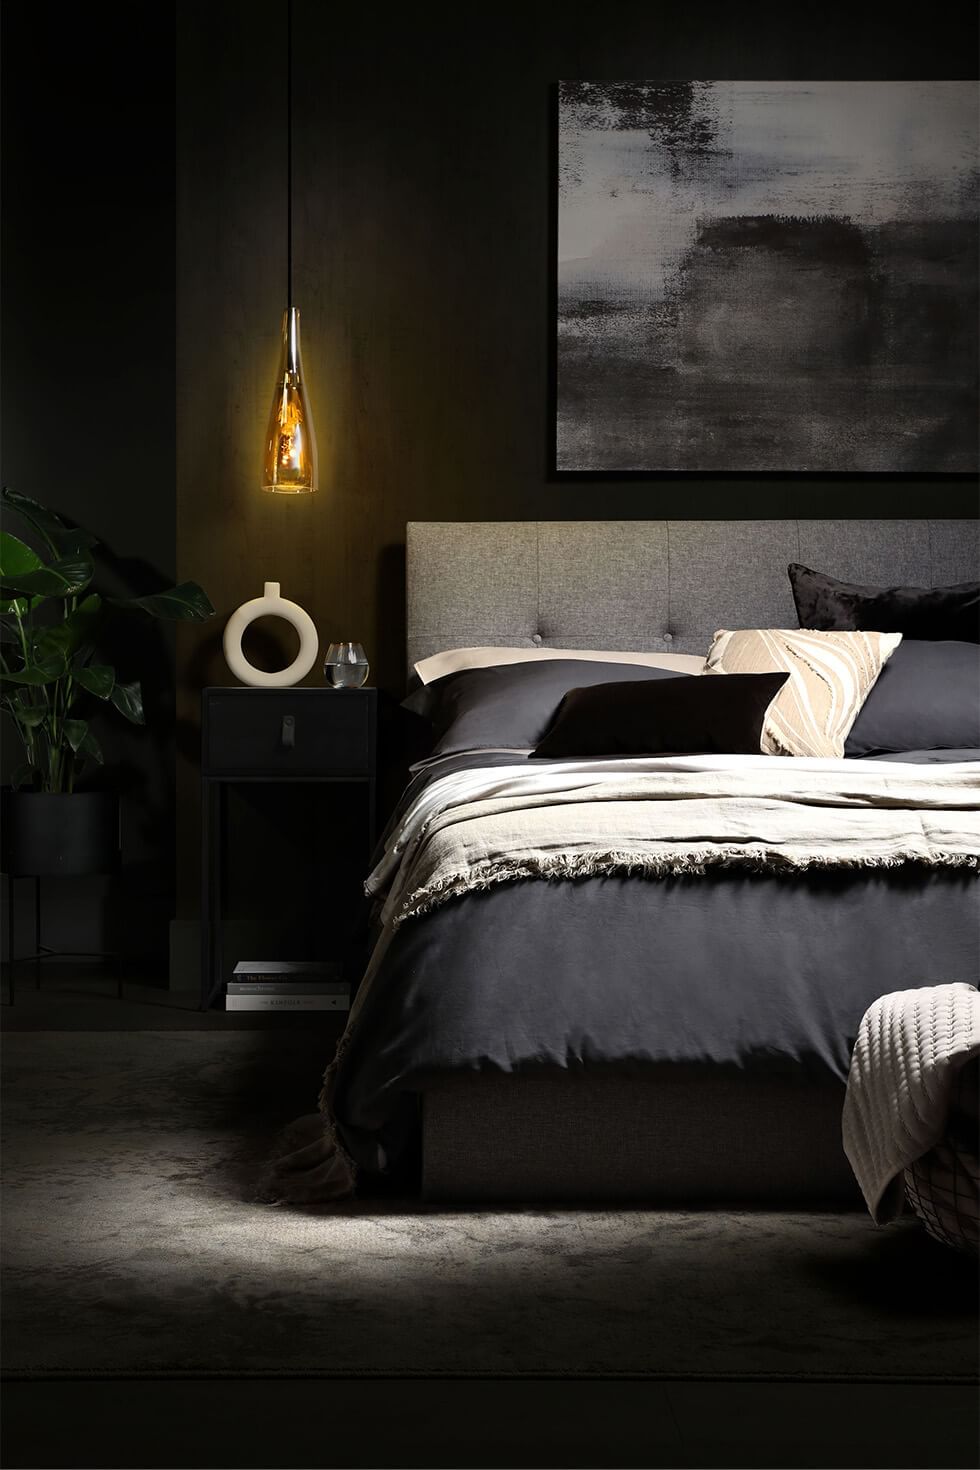 Black minimalist bedroom with ambient lighting